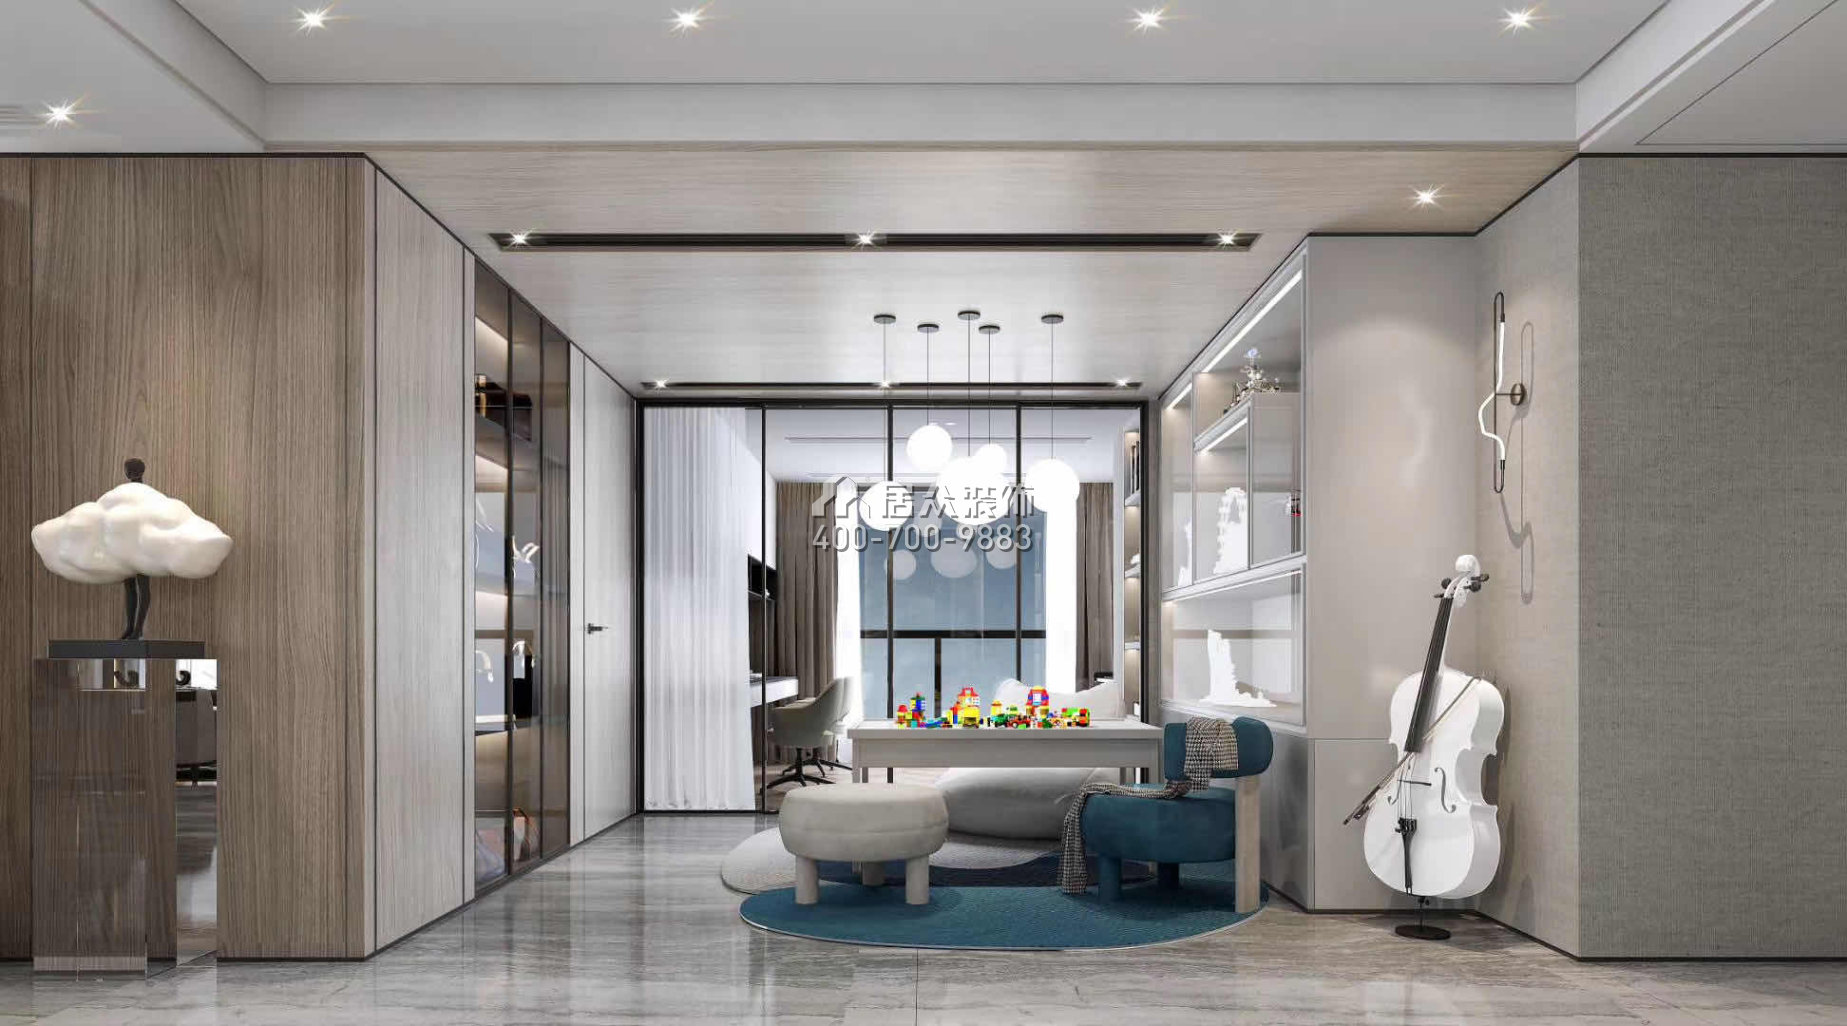 颐湾府189平方米现代简约风格平层户型客厅装修效果图